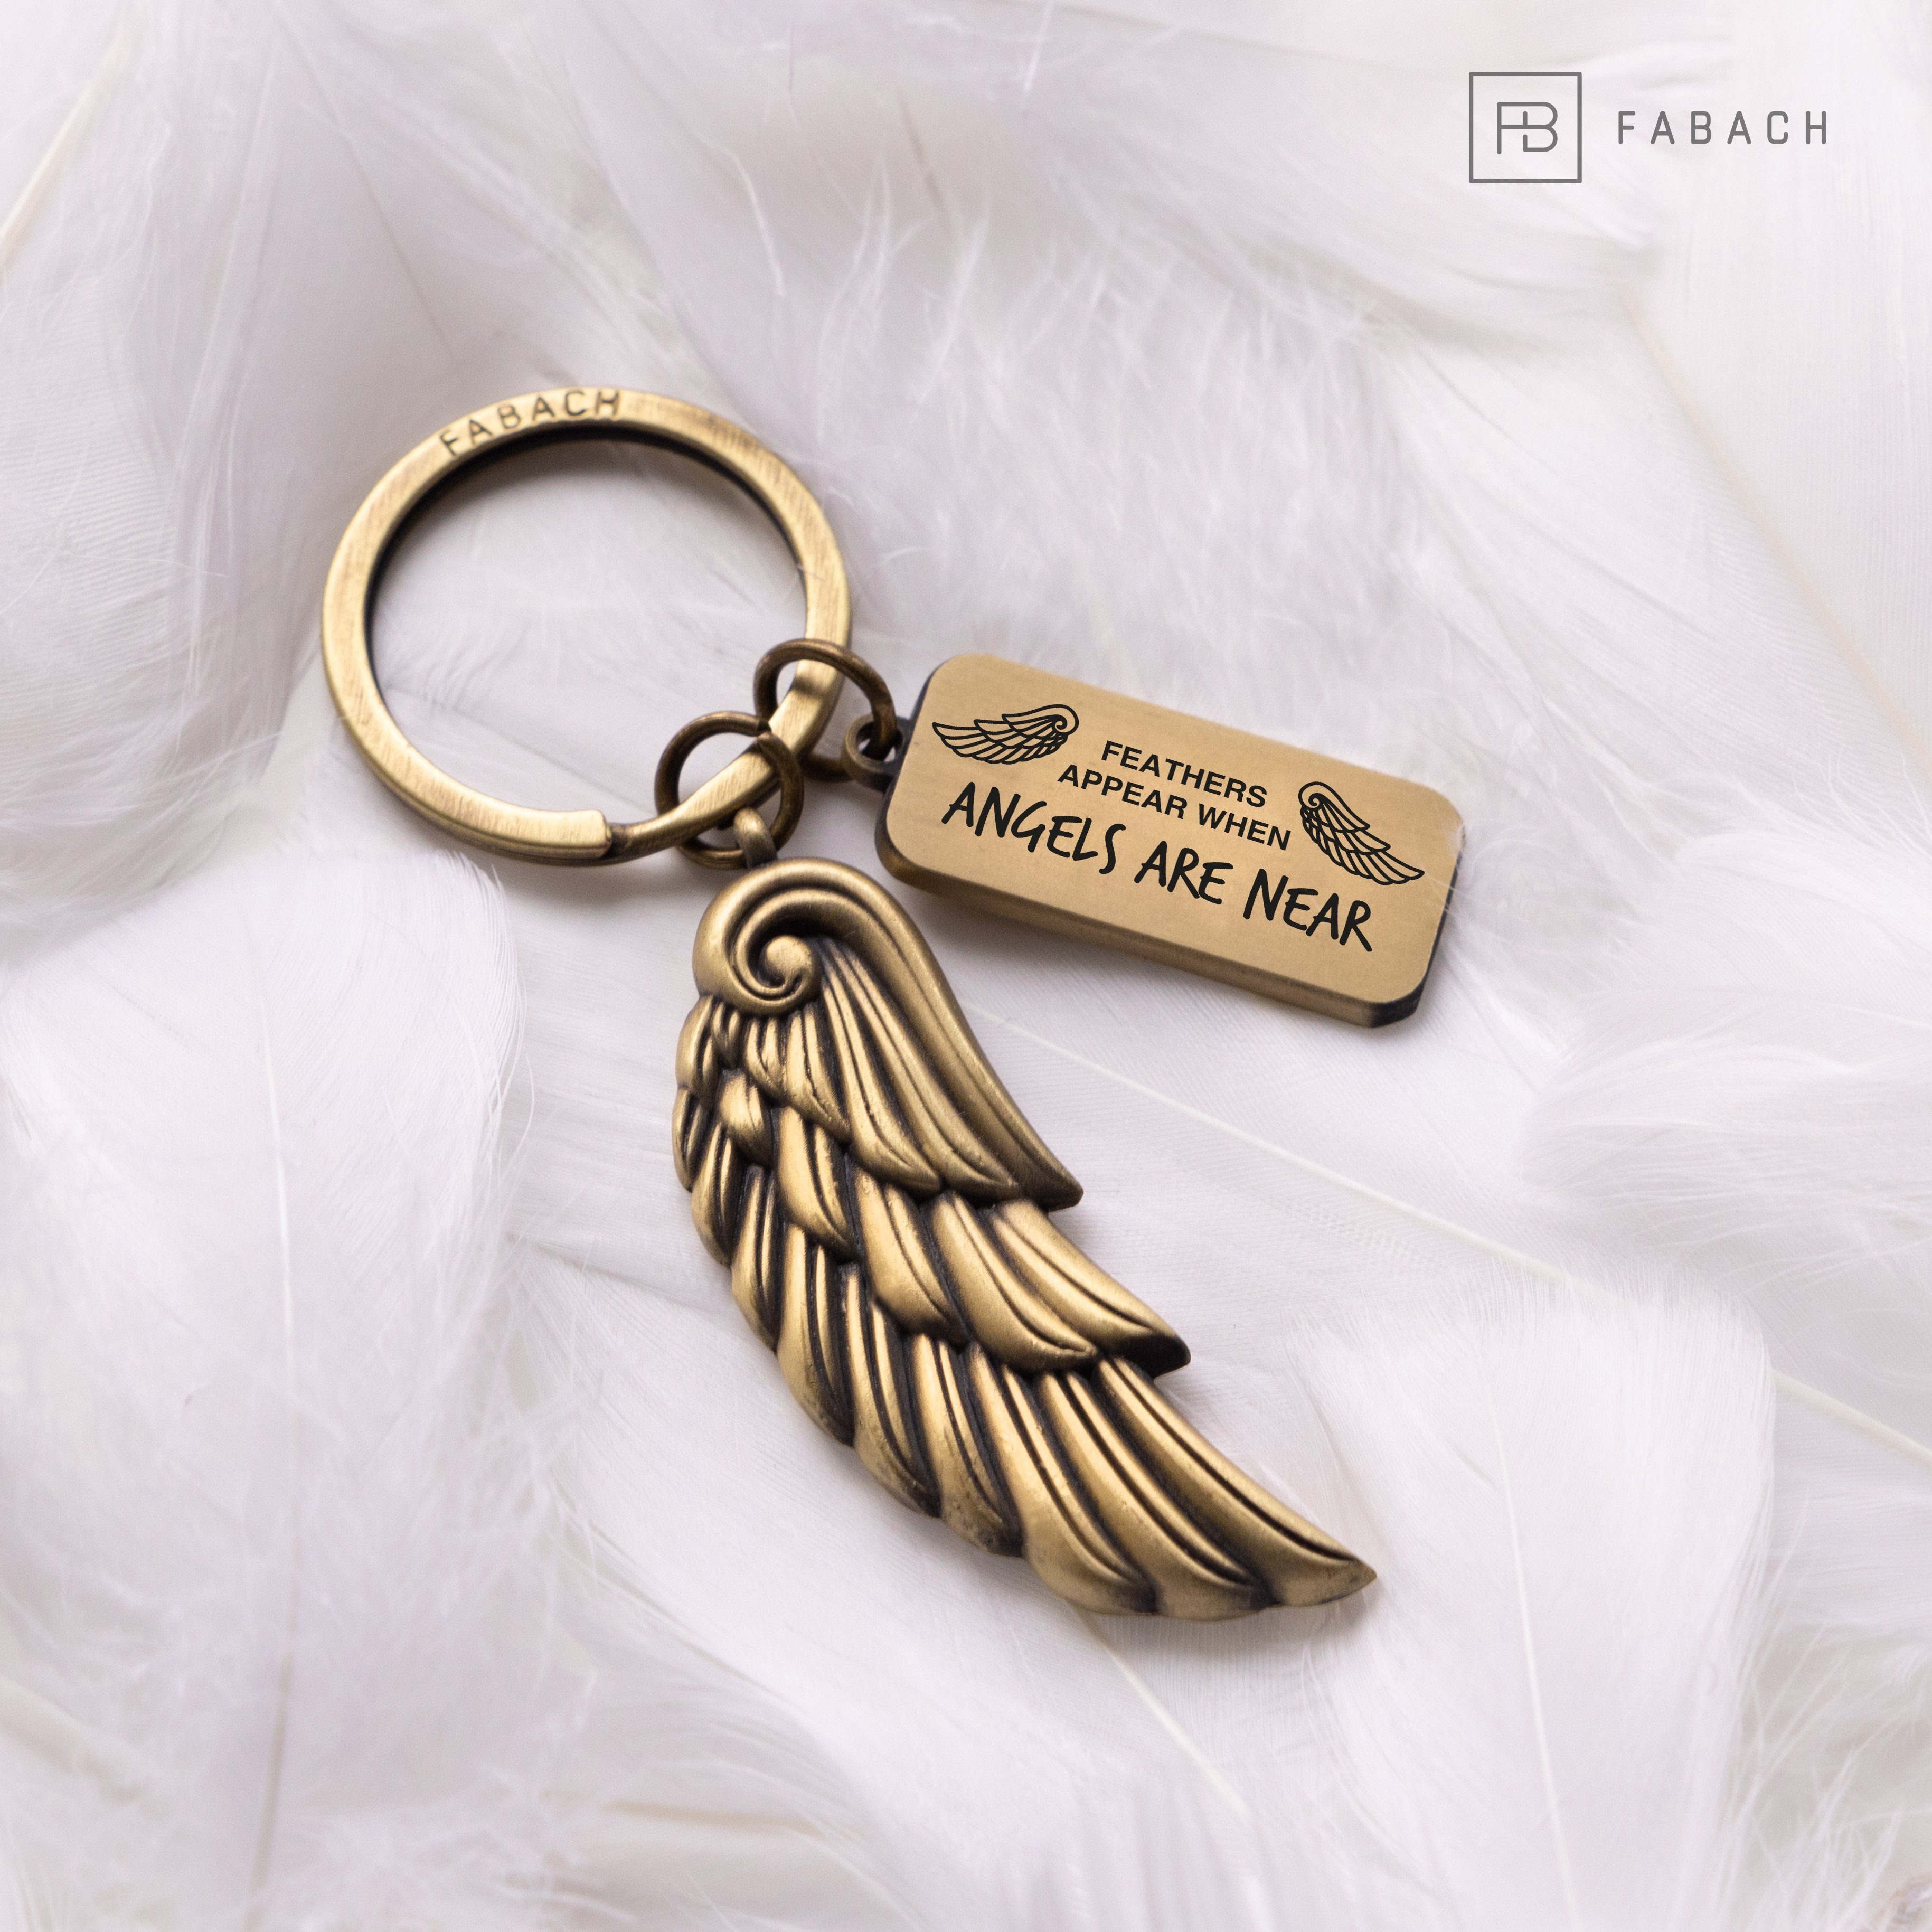 Are Angel Geschenk - Near mit Schlüsselanhänger Gravur - Bronze FABACH Angels Antique Schutzengel Engelsflügel